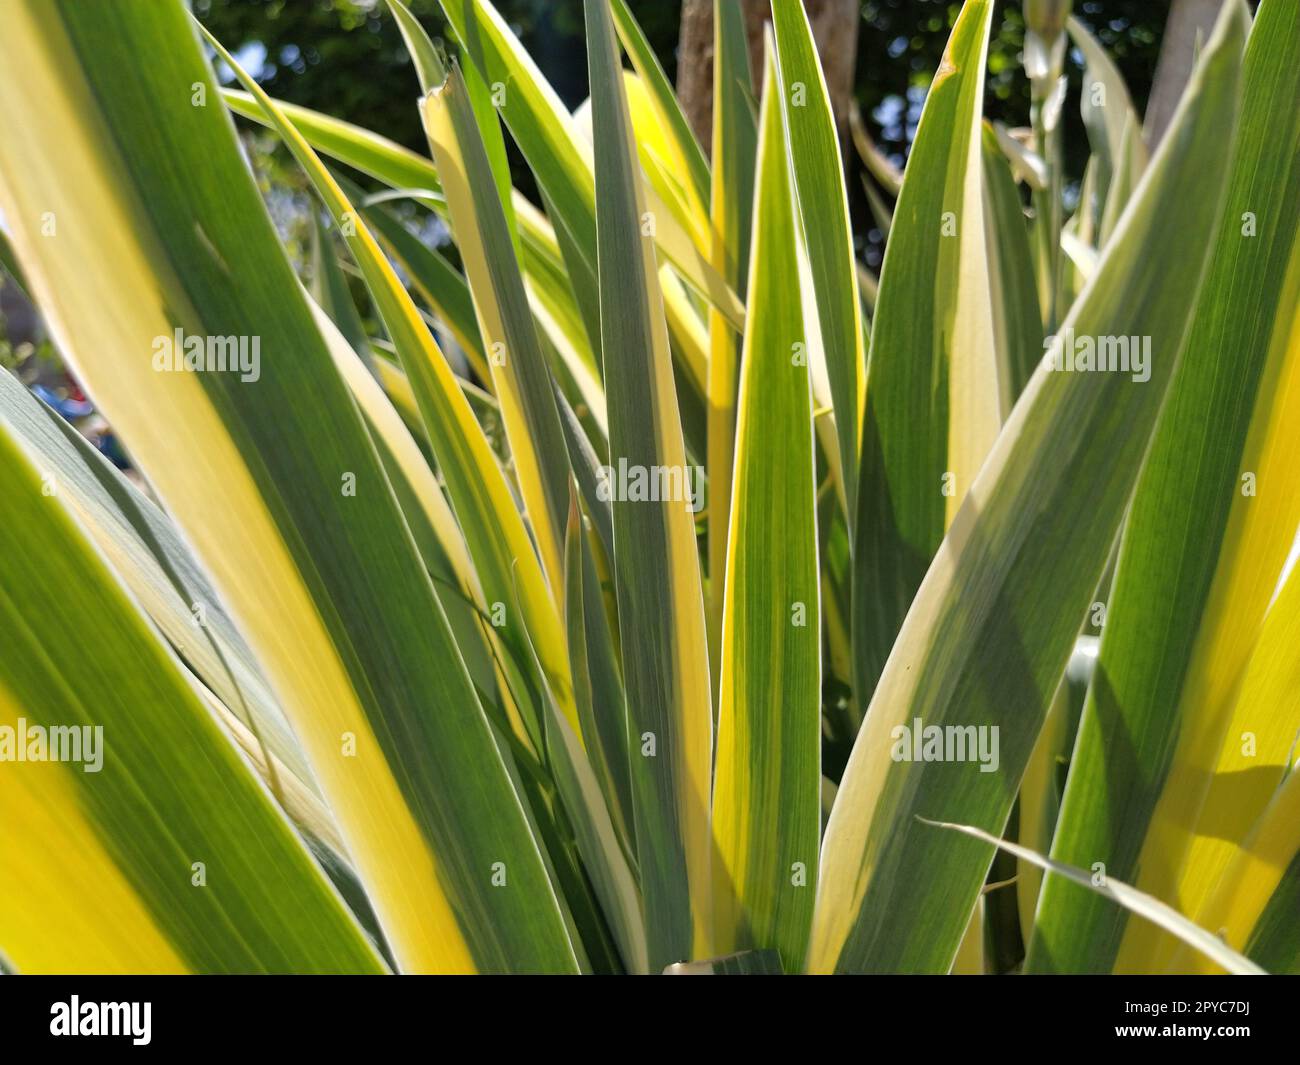 Primo piano delle foglie a strisce giallo-verde. Iris nel giardino. Genere di piante rizome perenni della famiglia Iris. Foglie a strisce lunghe gialle verdi. Sfondo floreale. Giardinaggio. Foto Stock